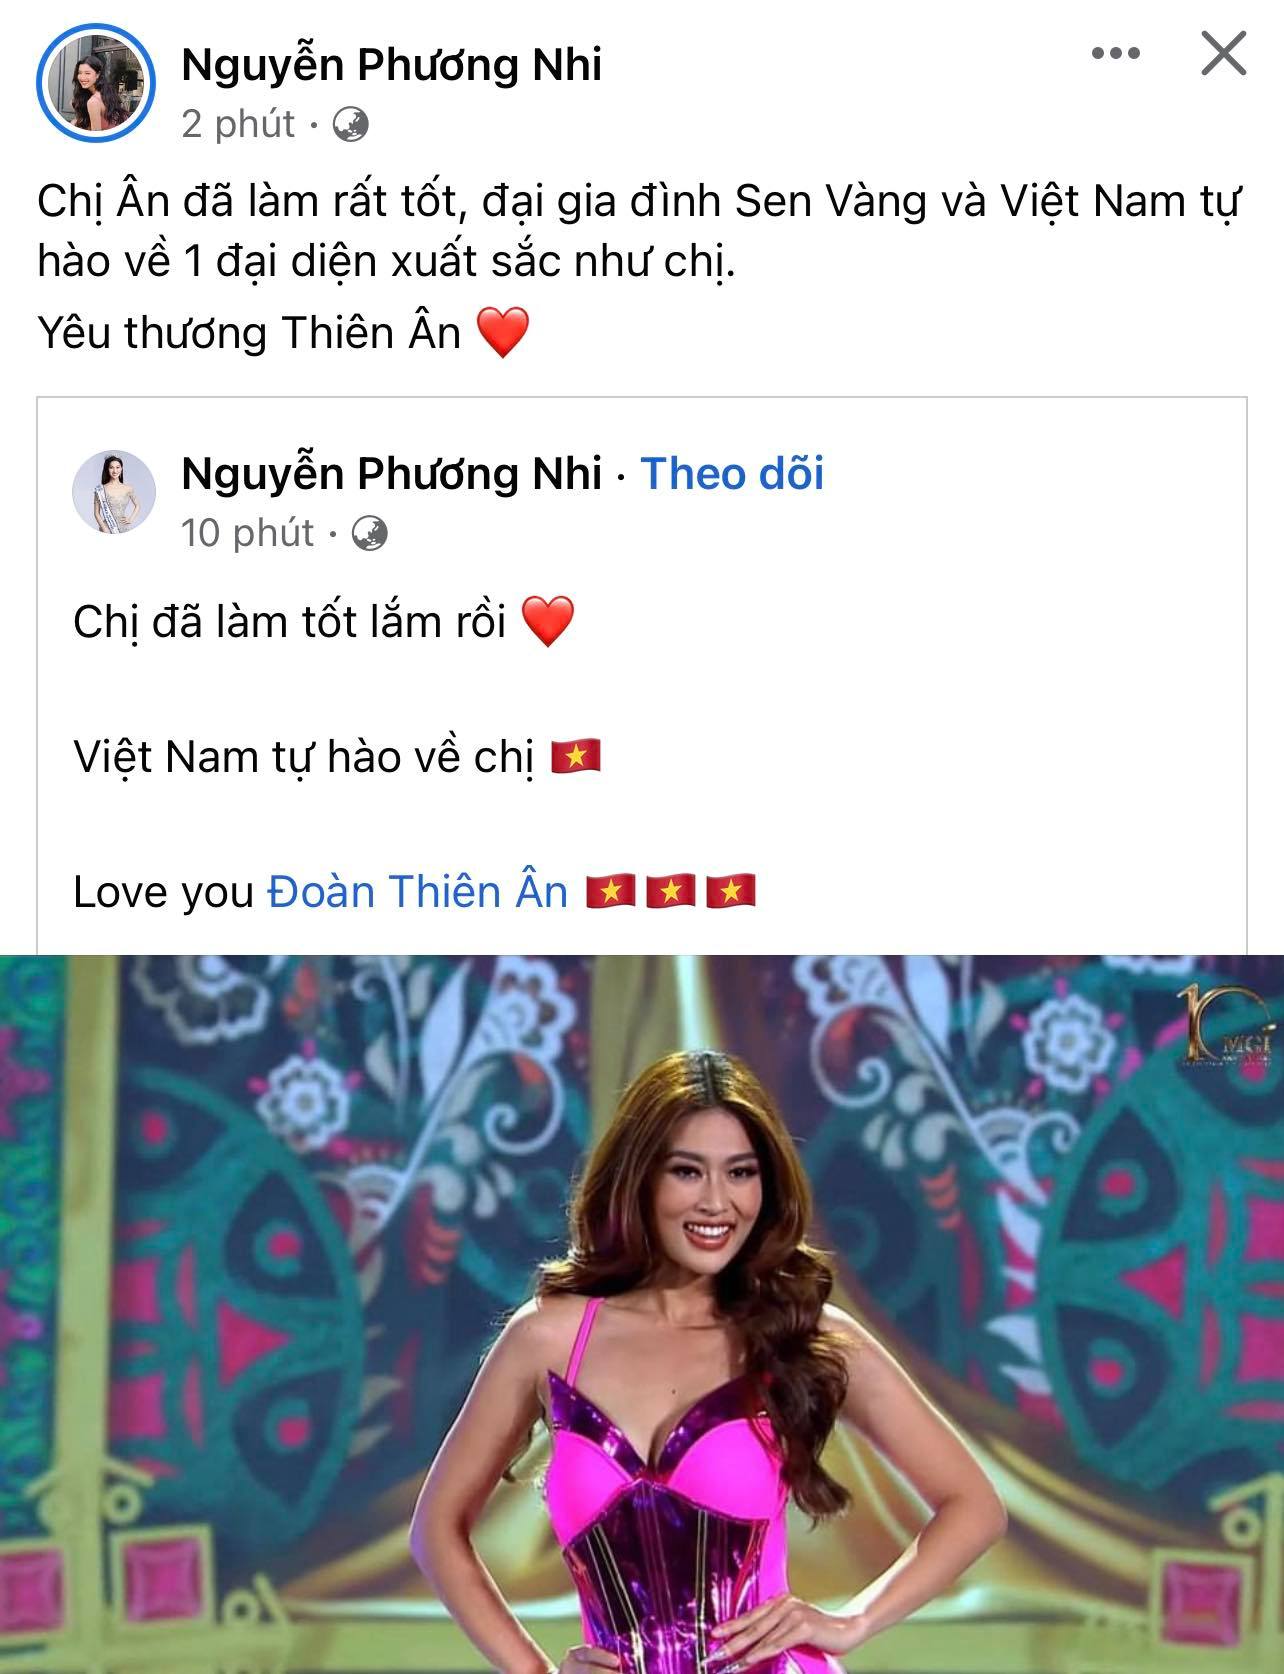 Nhiều sao Việt, đặc biệt là các nàng hậu, siêu mẫu đều đăng bài thể hiện sự ủng hộ Thiên Ân dù cô đã bị loại đáng tiếc 